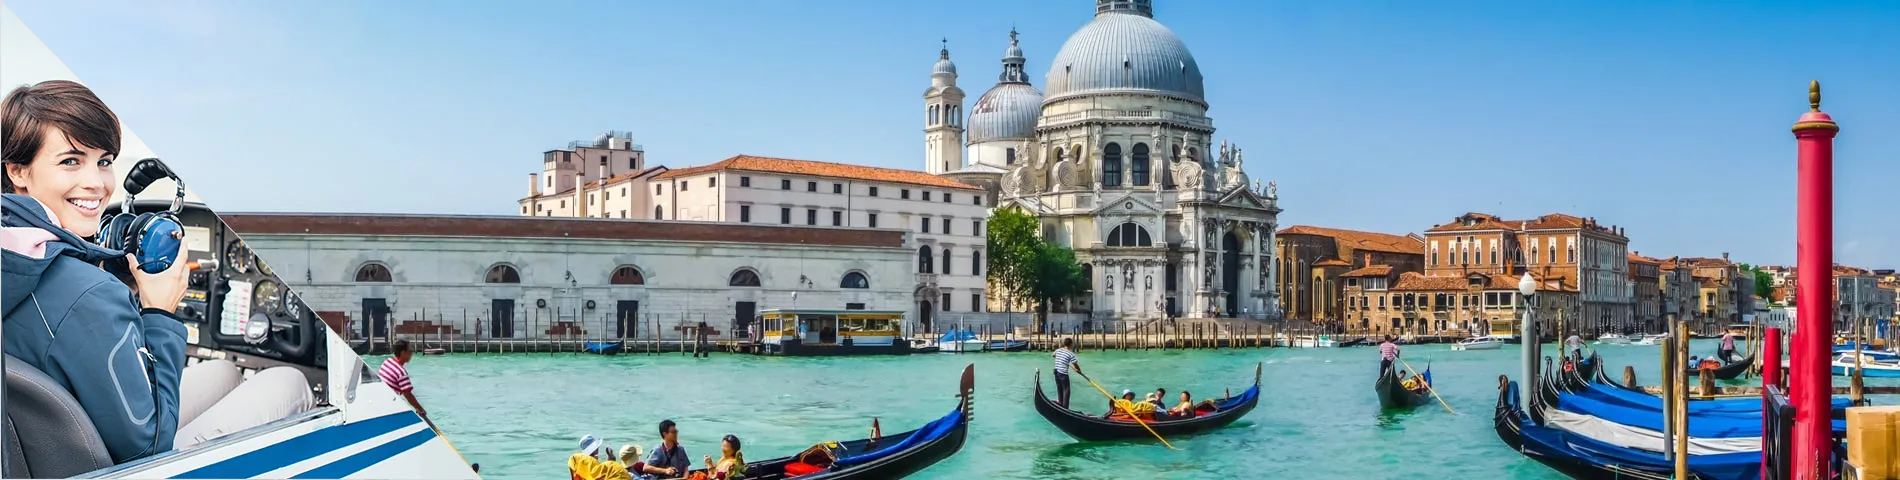 Venetië - Italiaans  voor de luchtvaart